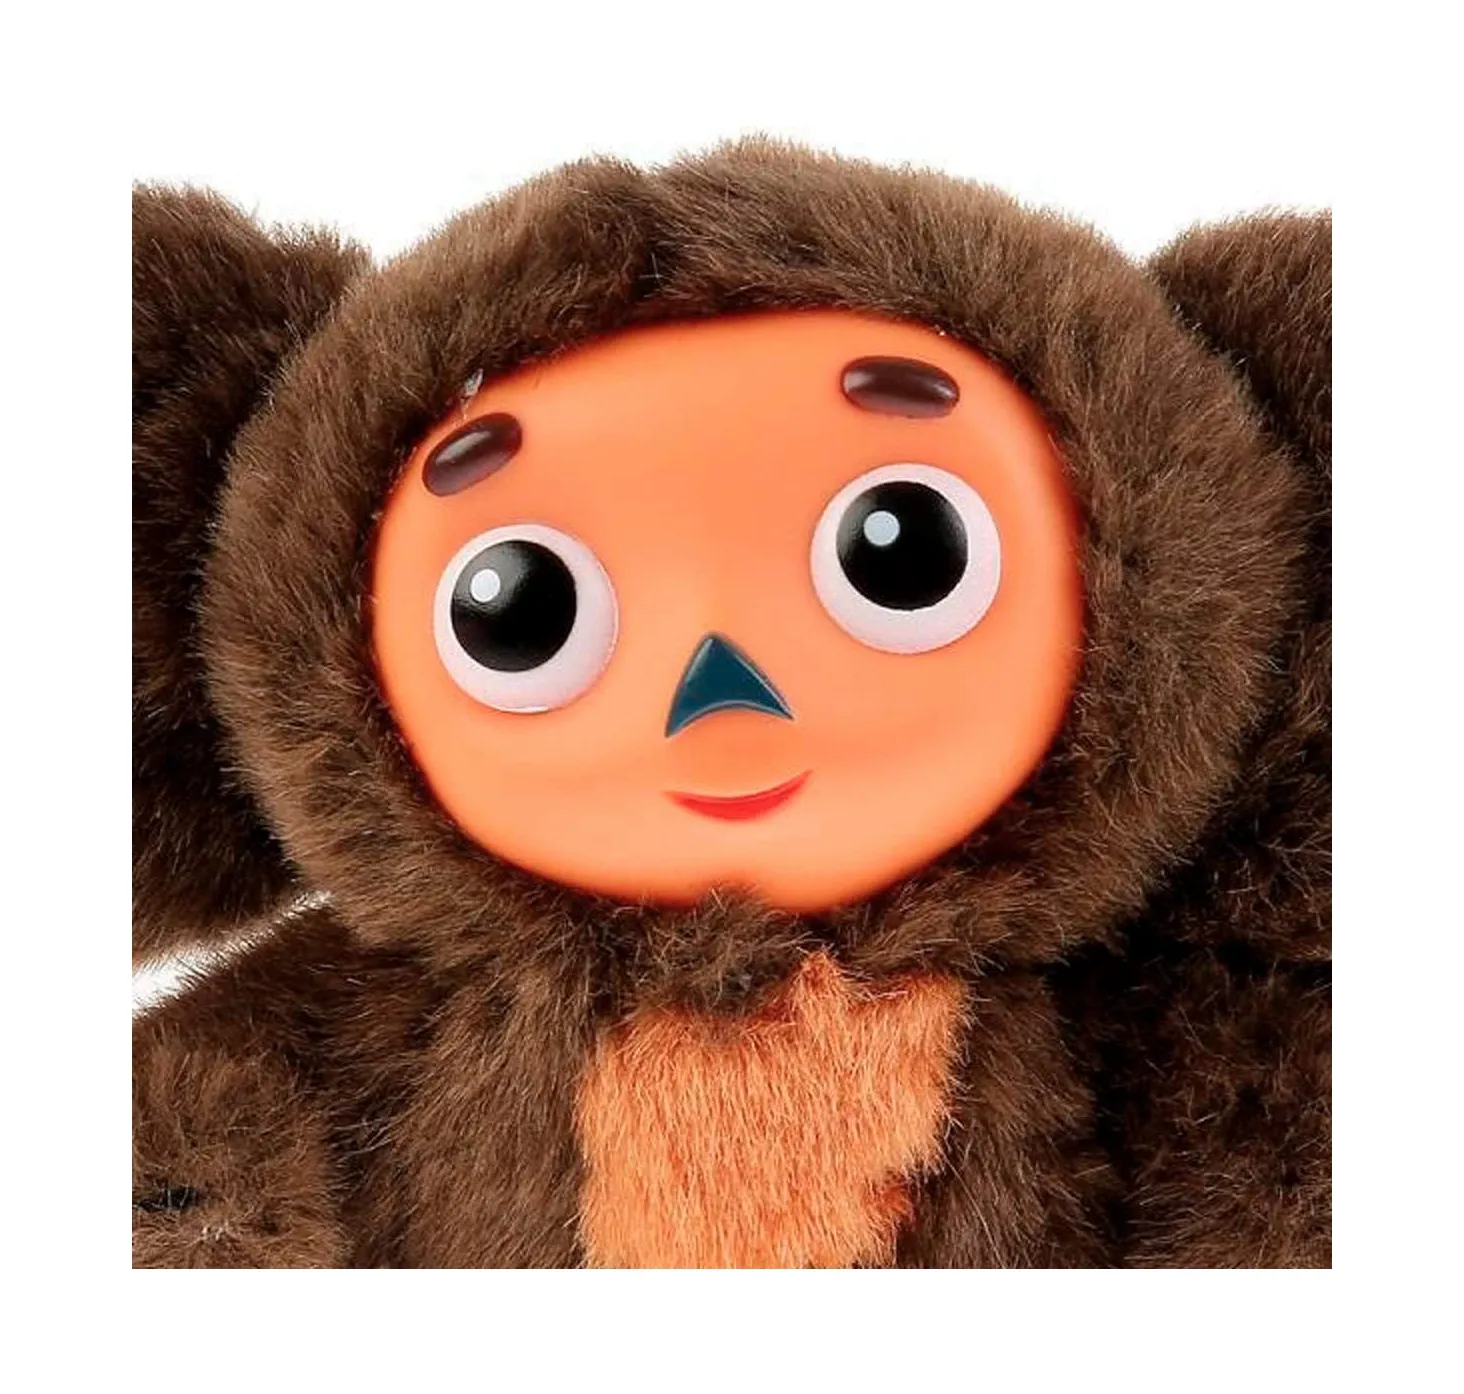 ของเล่นรัสเซีย Cheburashka,ของเล่นตุ๊กตาลิง Cheburashka พูดได้